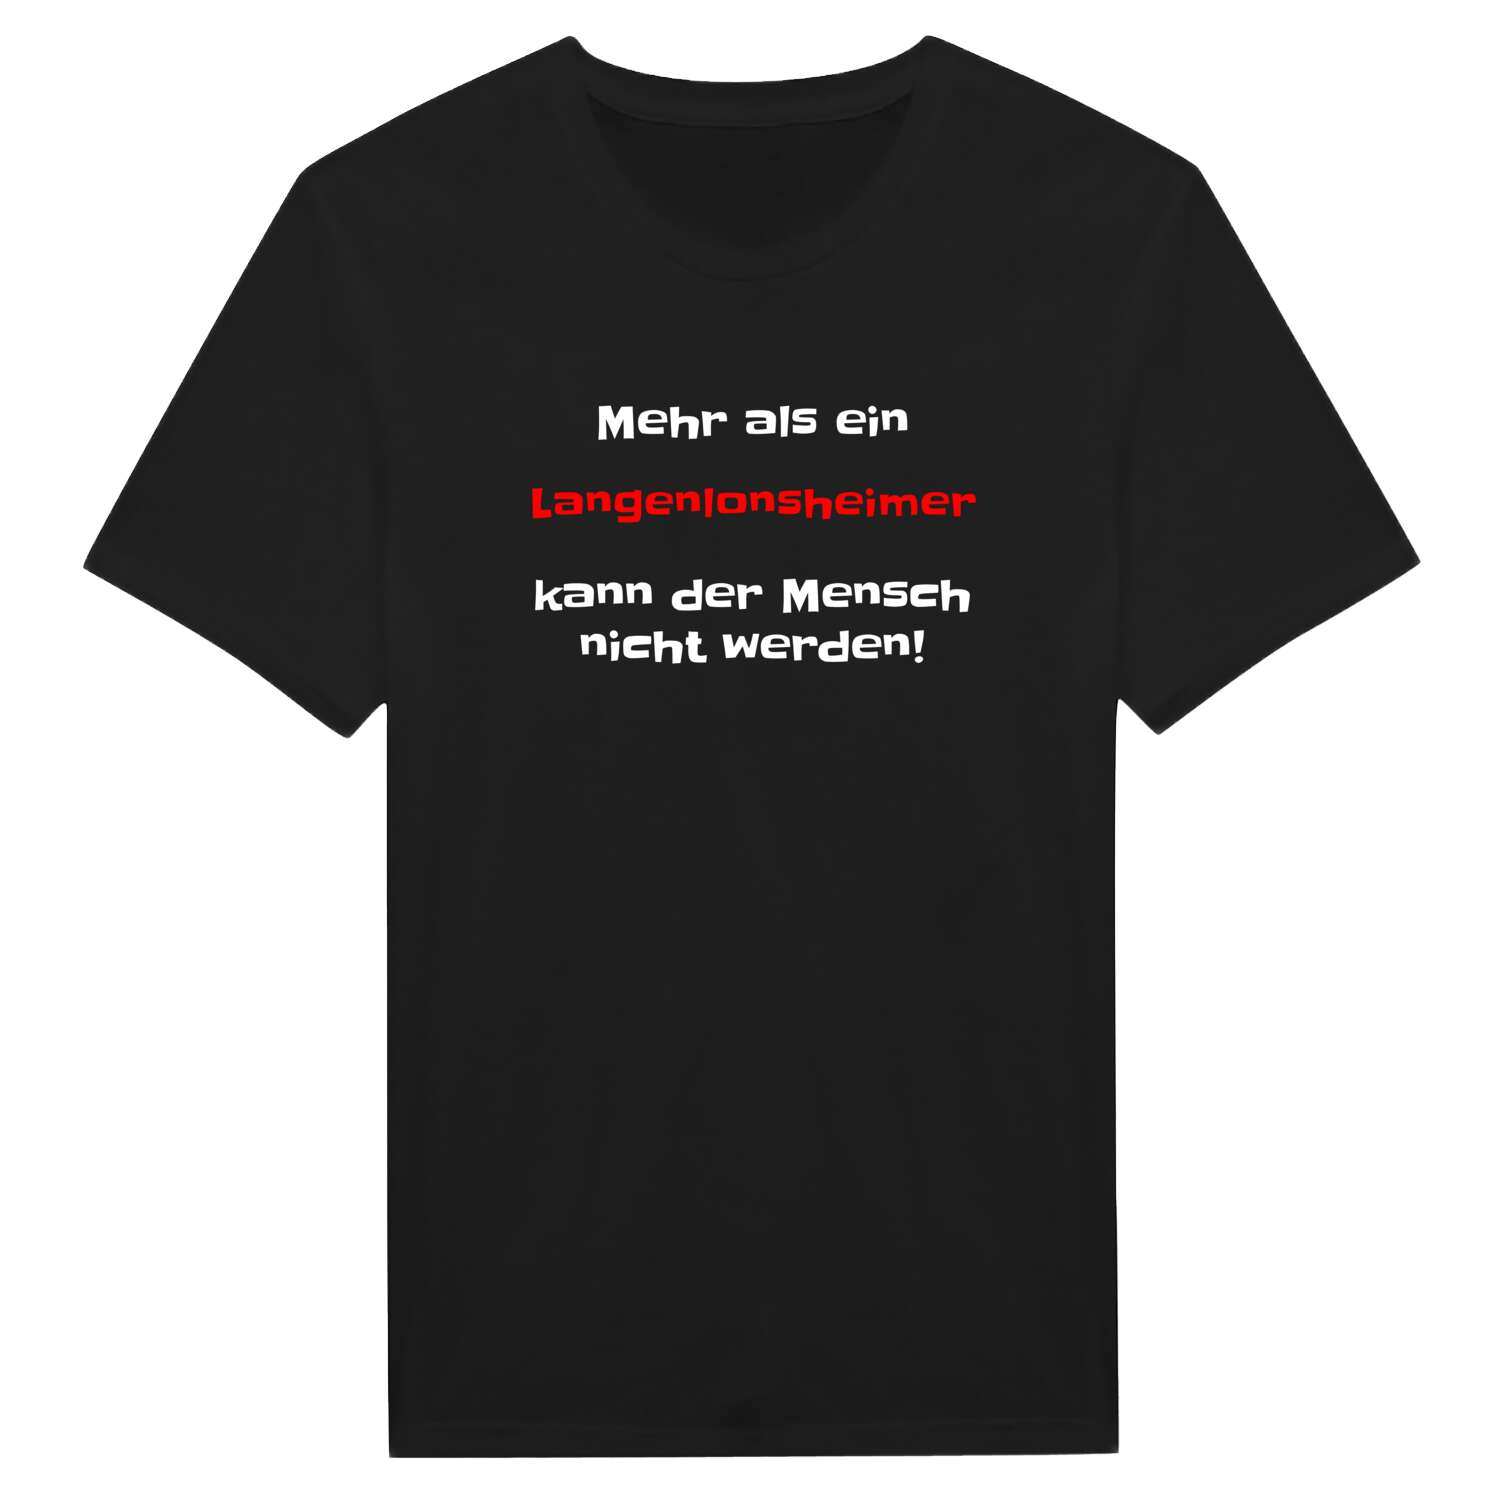 Langenlonsheim T-Shirt »Mehr als ein«